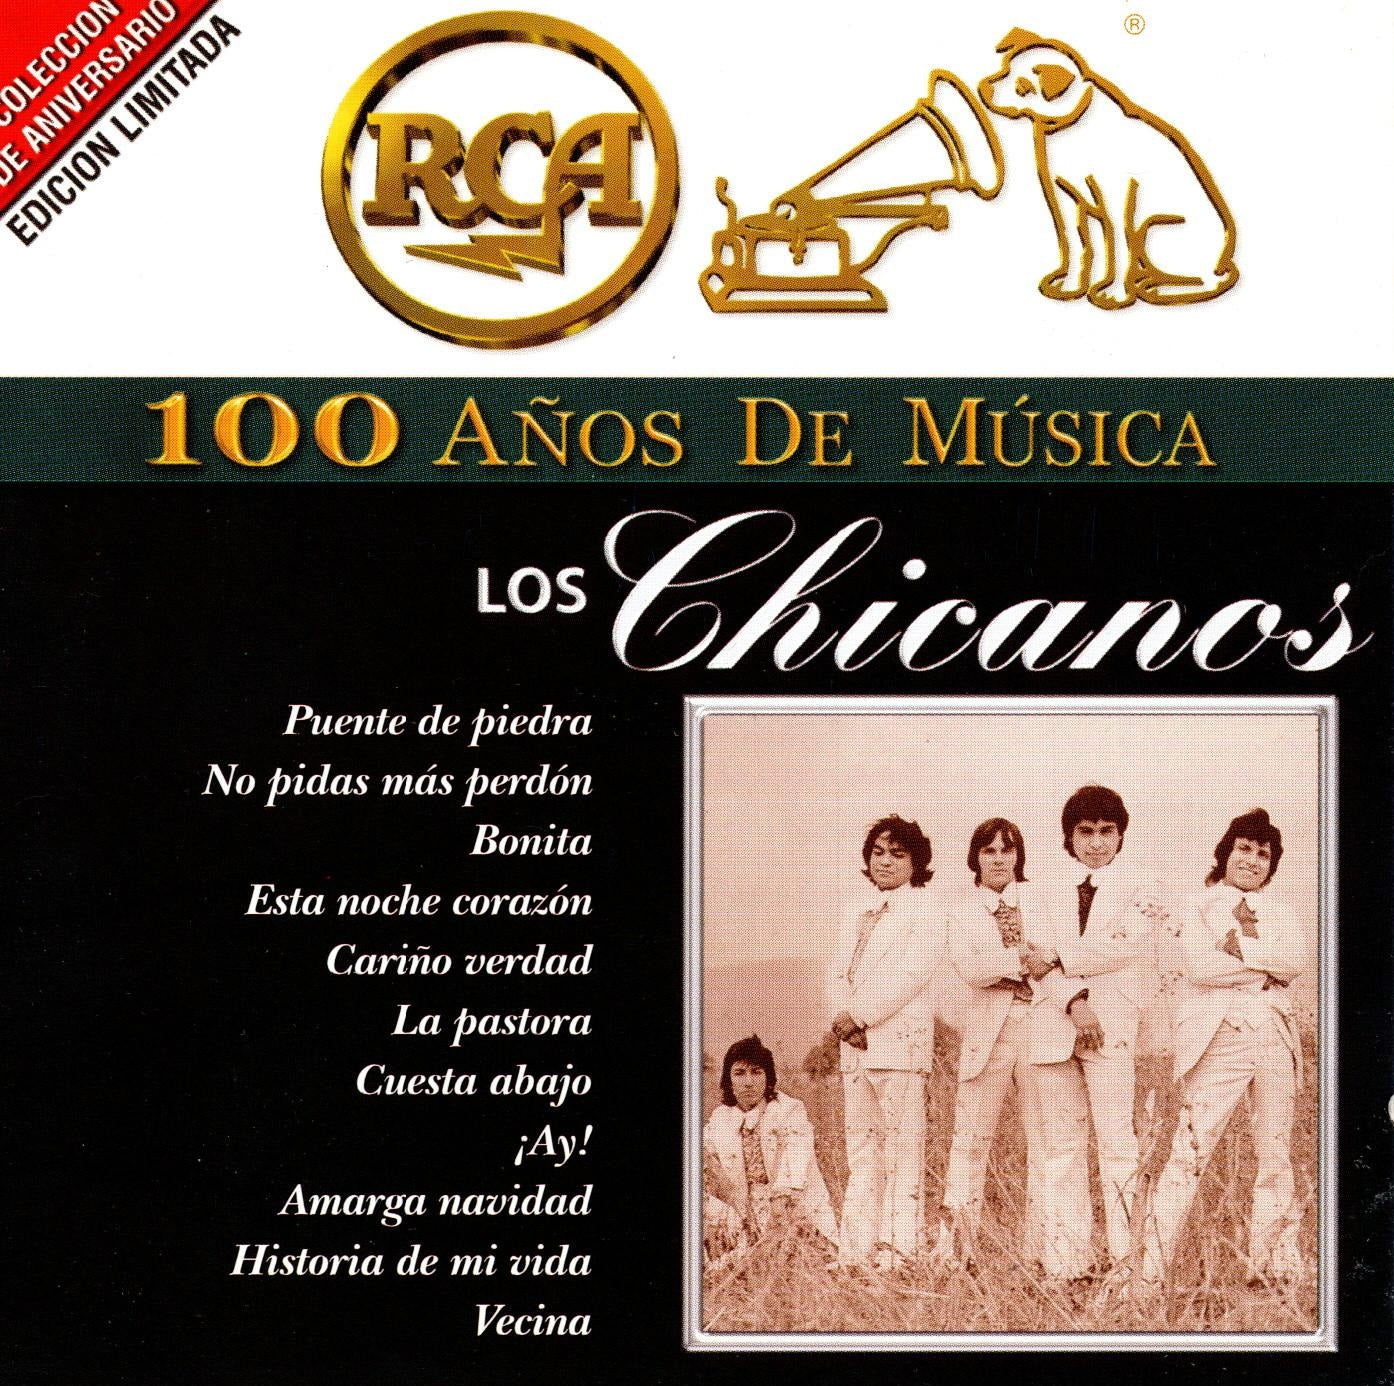 CD x2 RCA 100 AÑOS MUSICA LOS CHICANOS